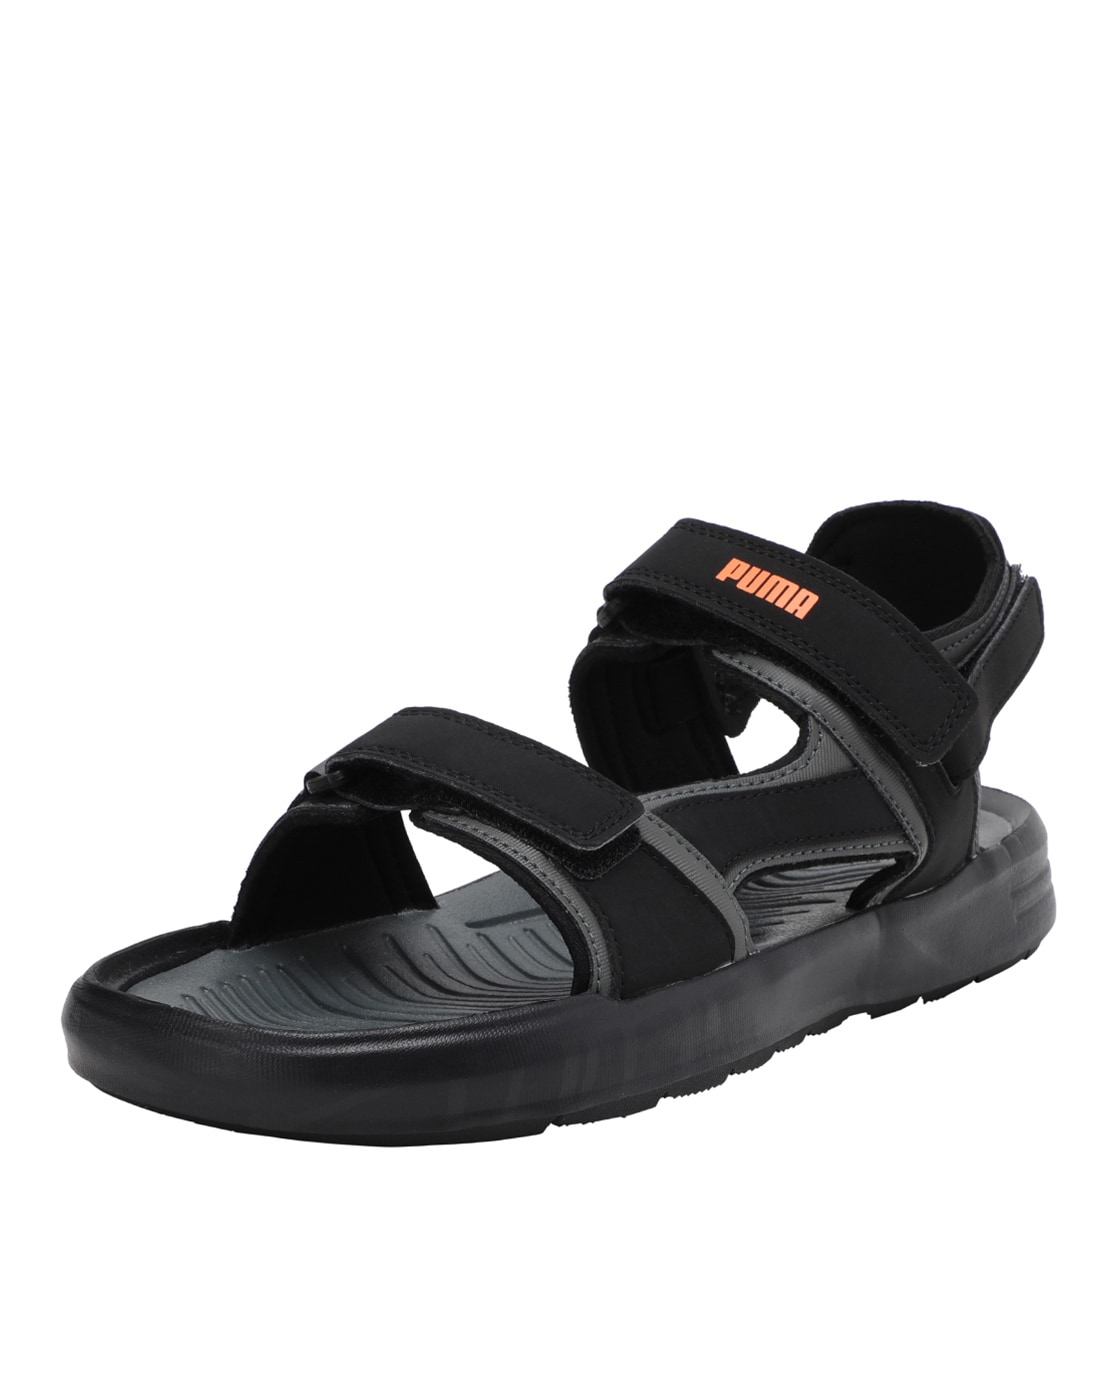 puma sandals 500 rs